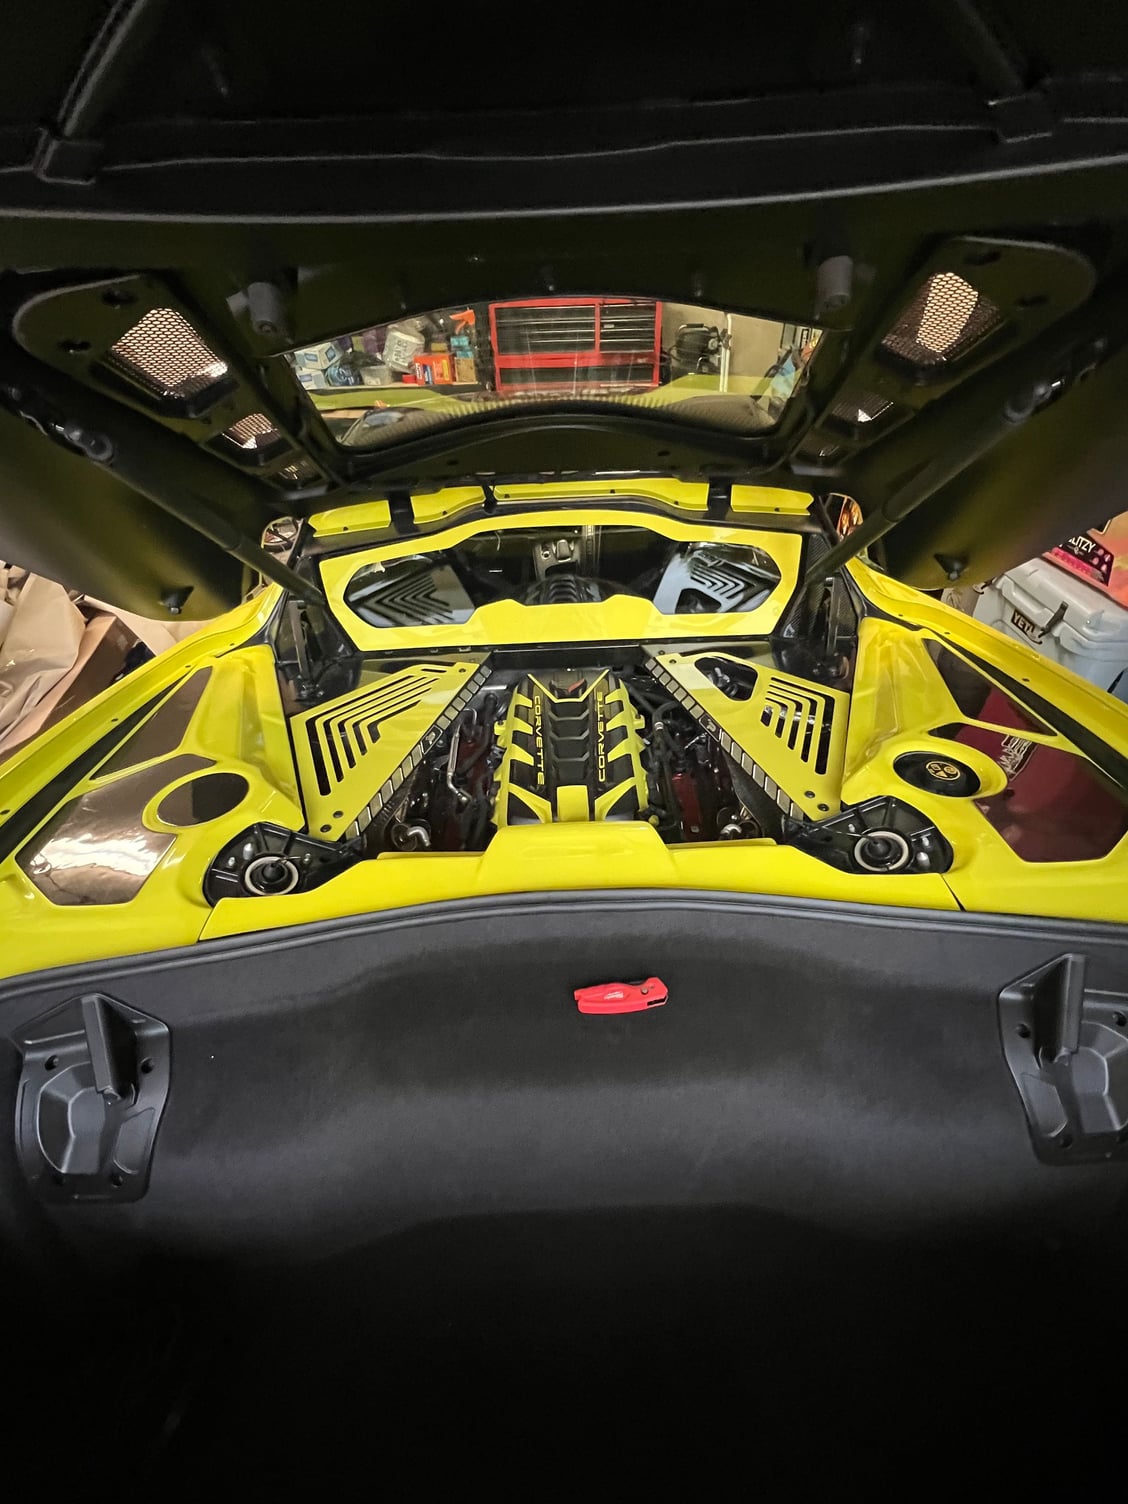 2023 Corvette C8 engine bay hard plastics - CorvetteForum - Chevrolet  Corvette Forum Discussion